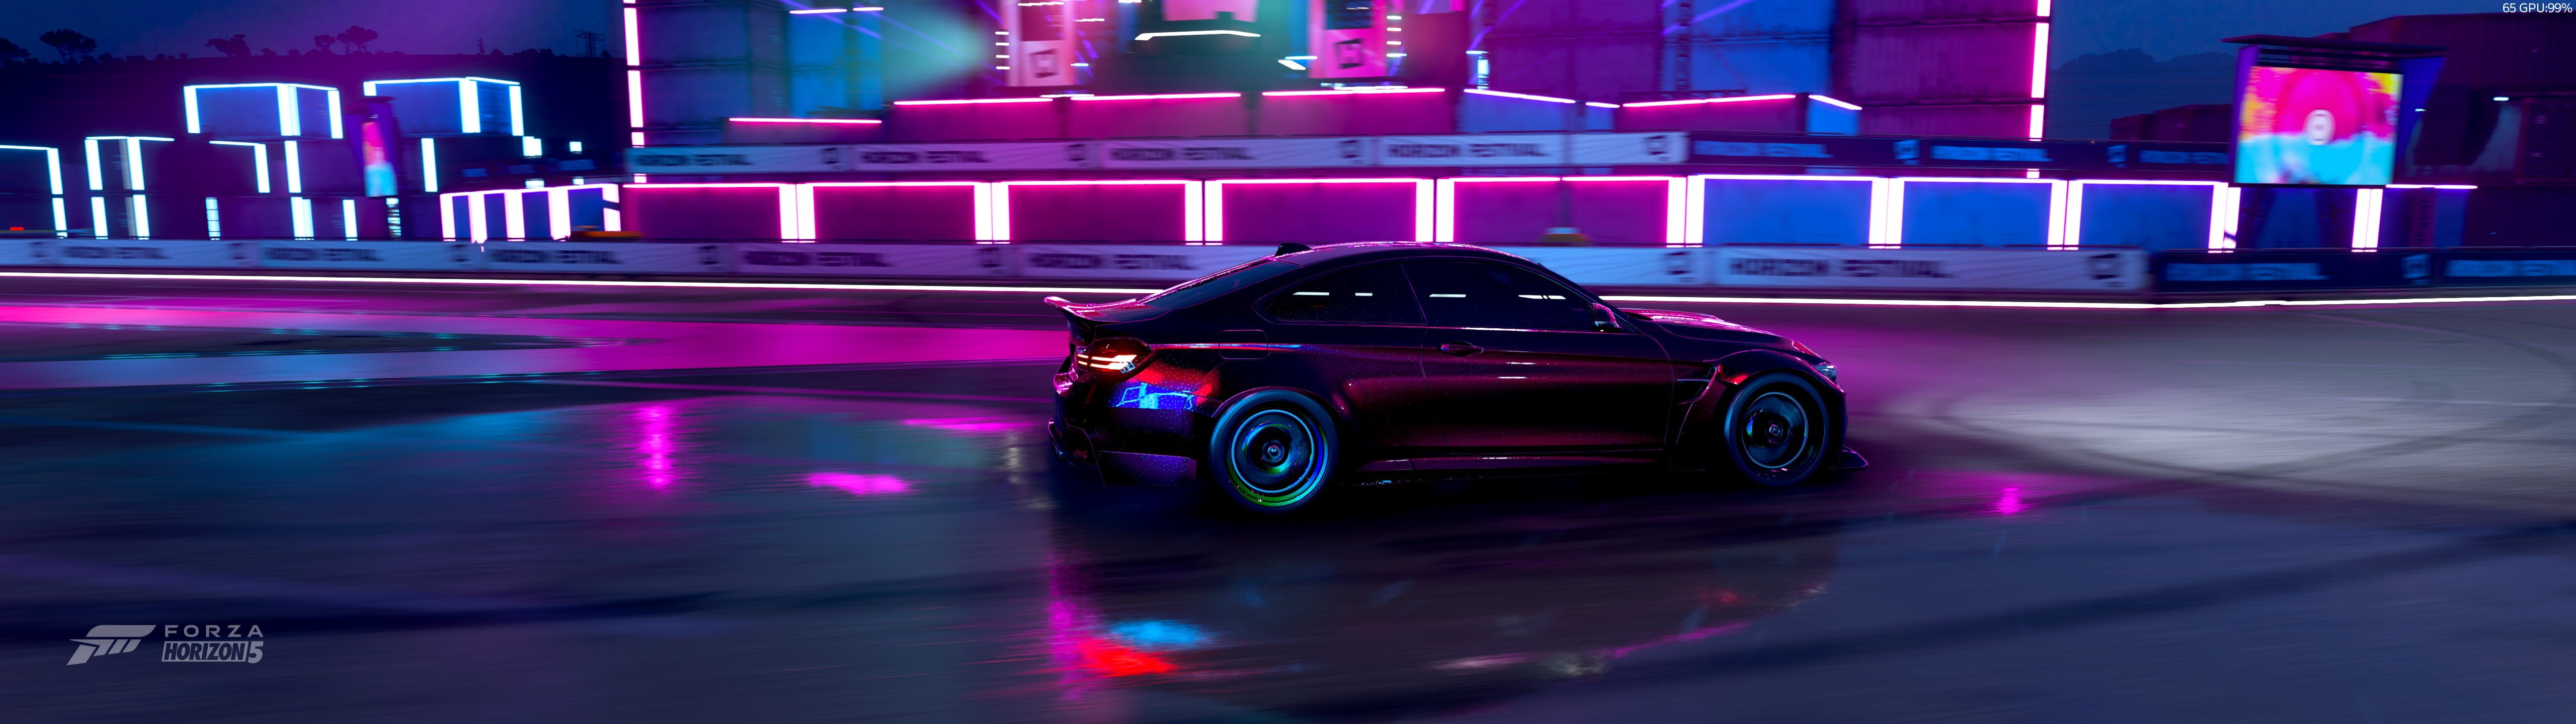 BMW M, Forza Horizon 5, photo realistic, neon